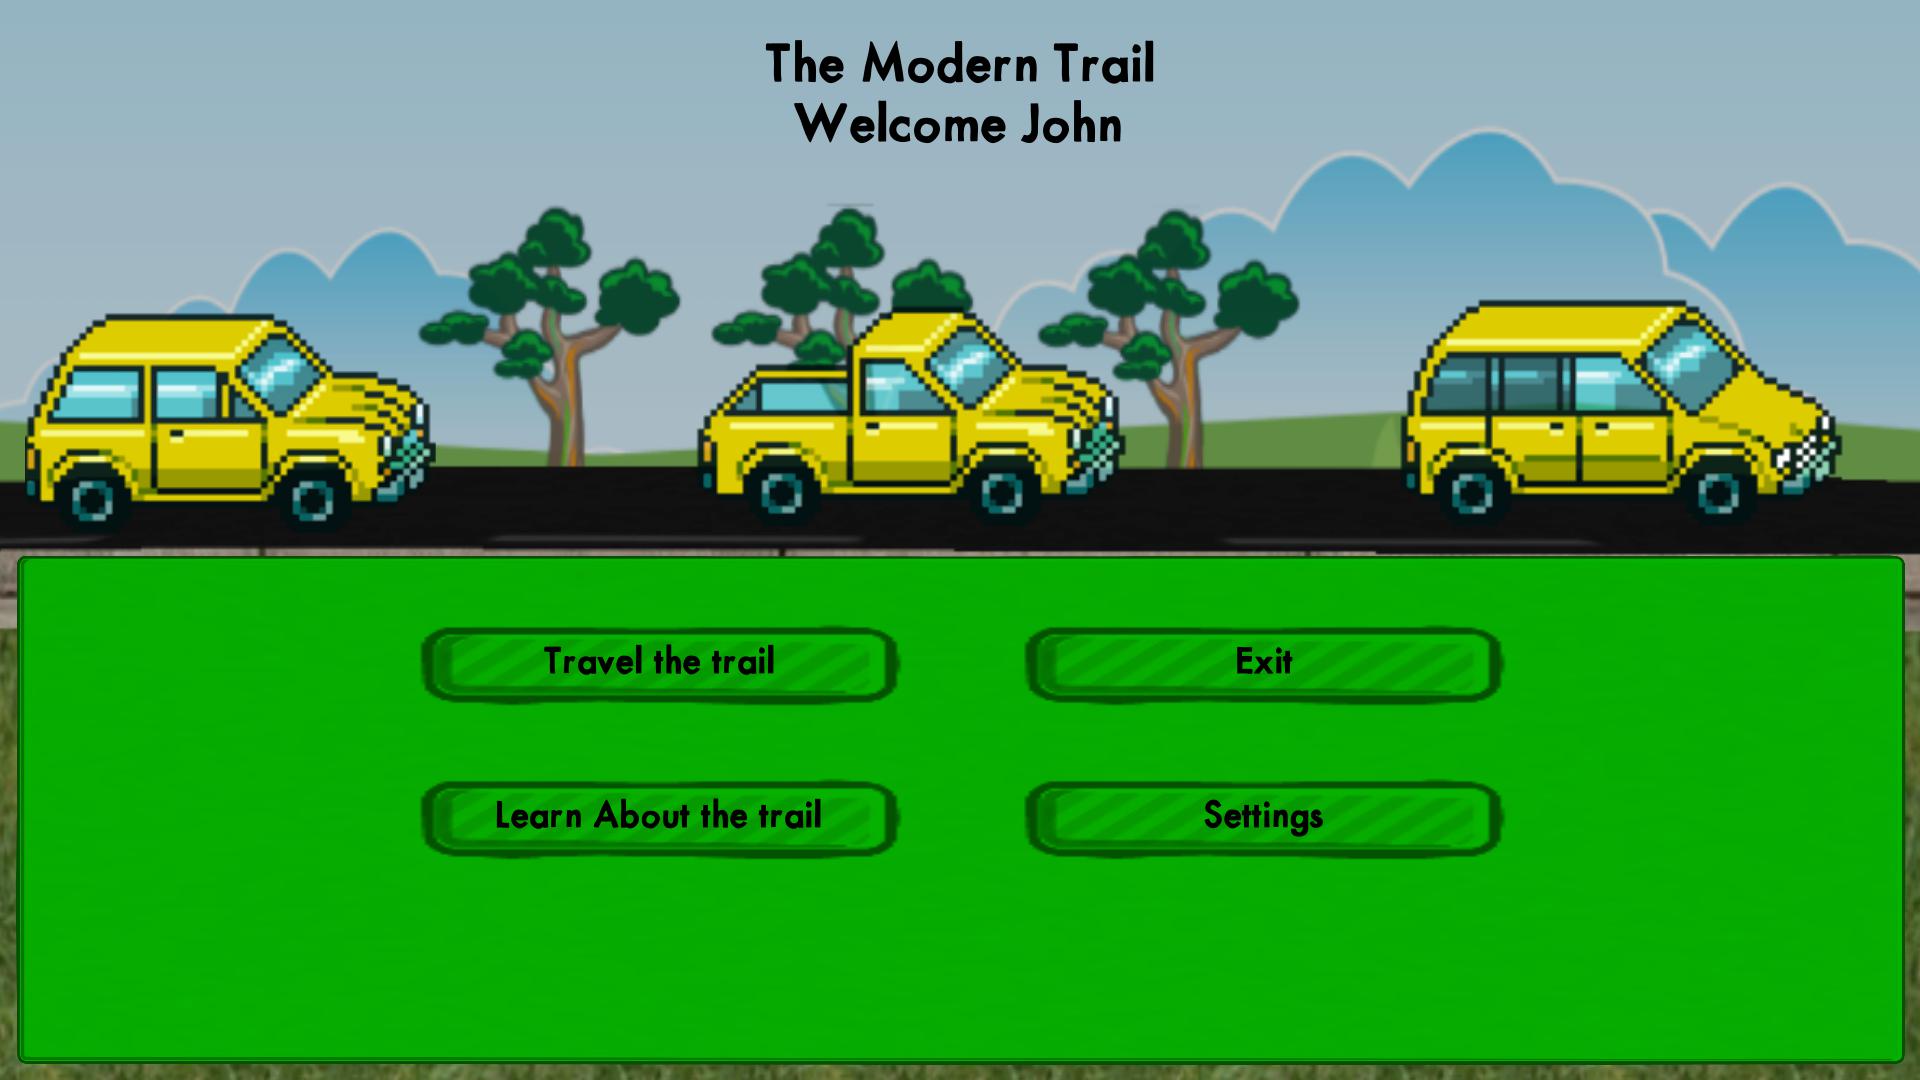 The Modern Trail